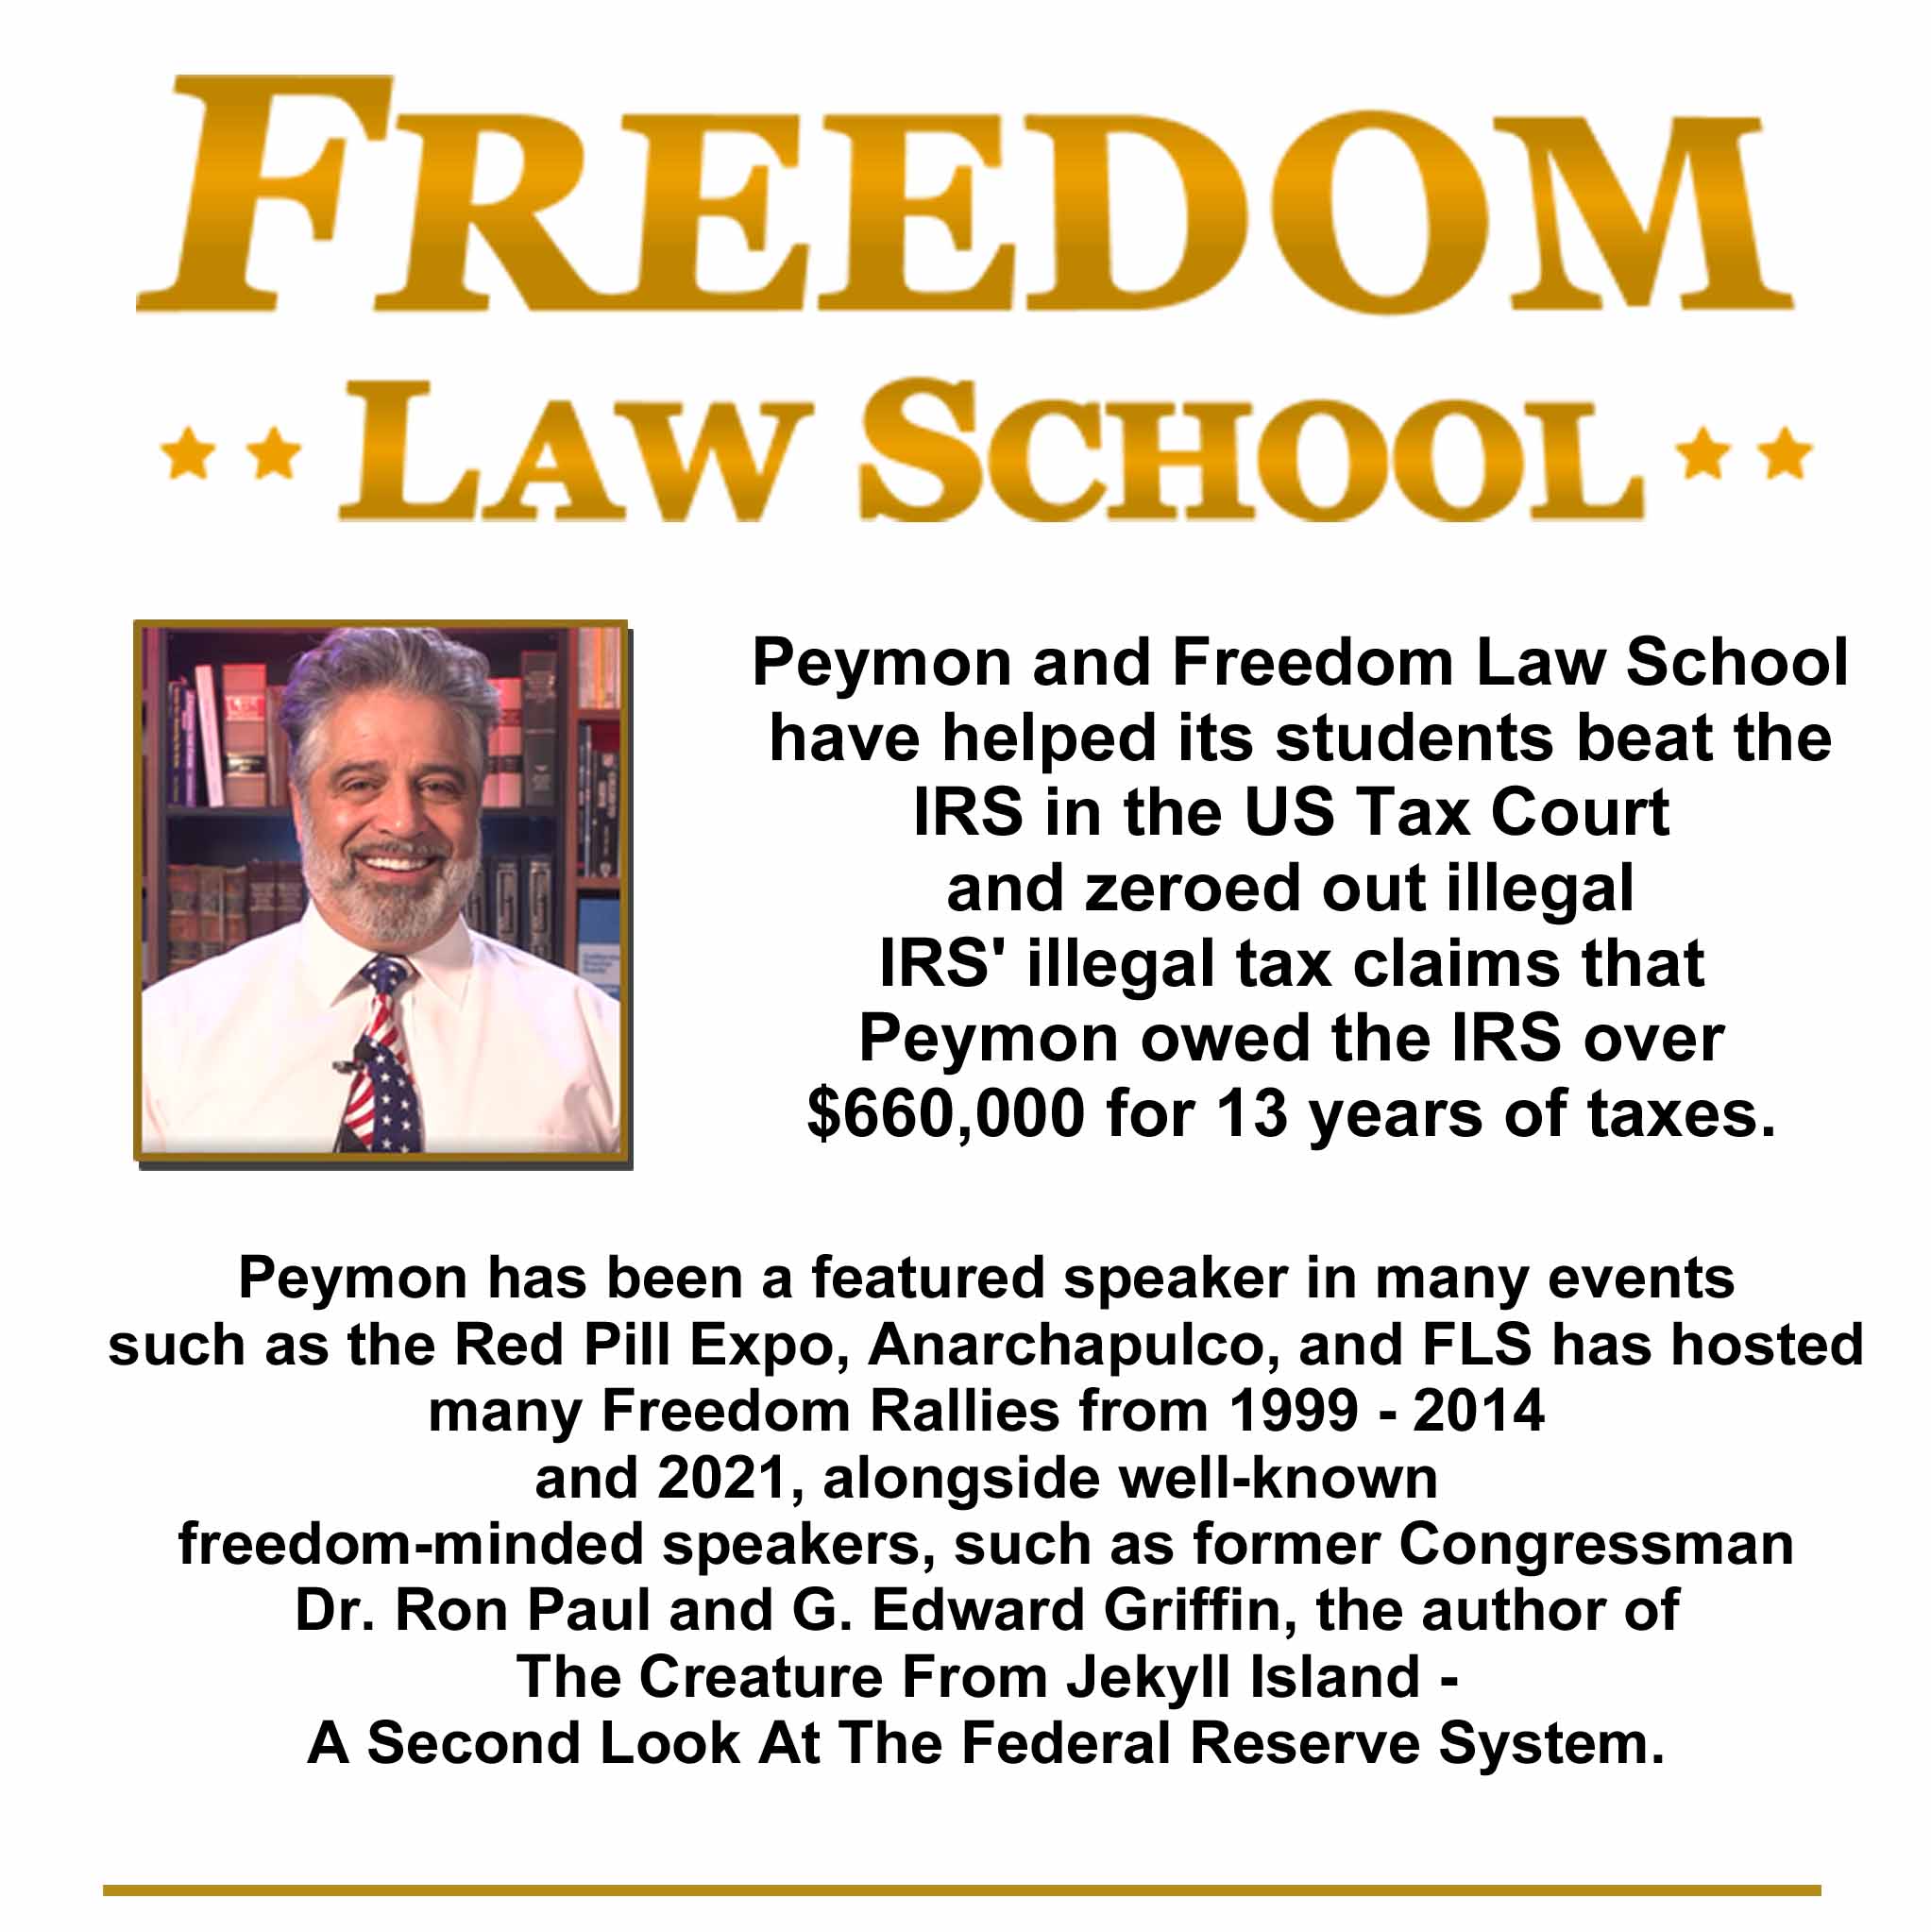 FreedomLawSchool.org